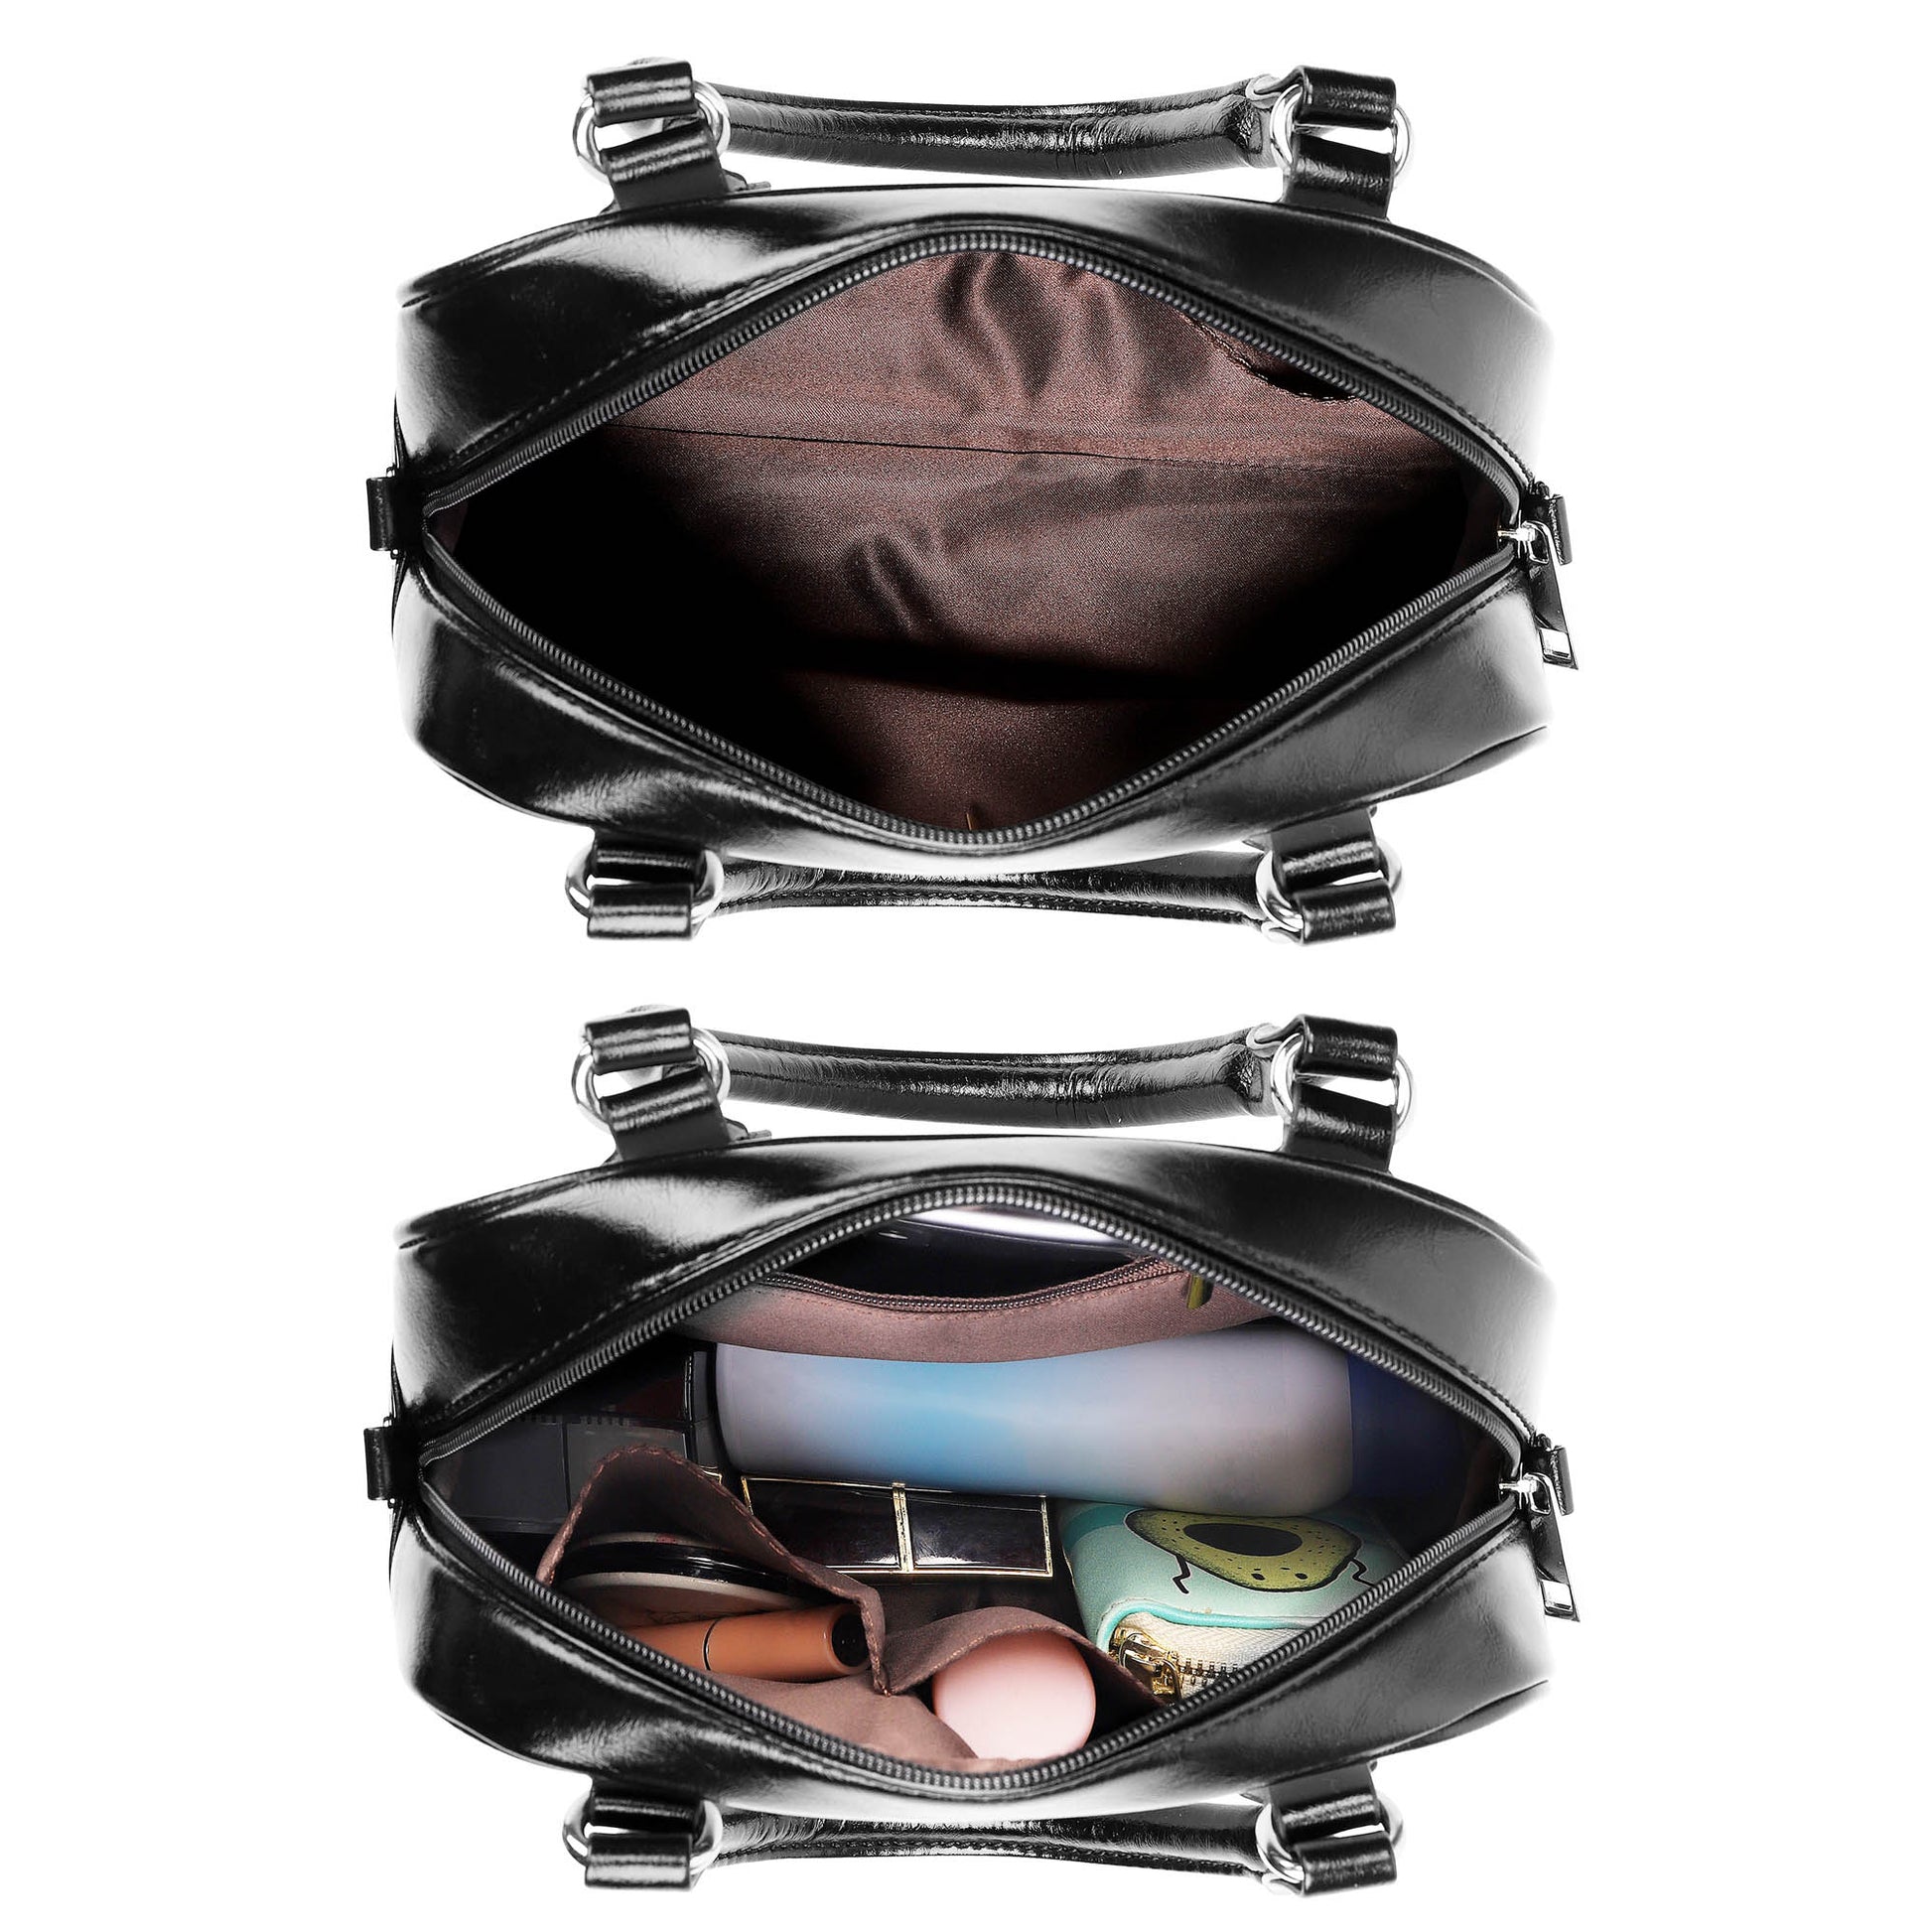 Cathcart Tartan Shoulder Handbags - Tartanvibesclothing